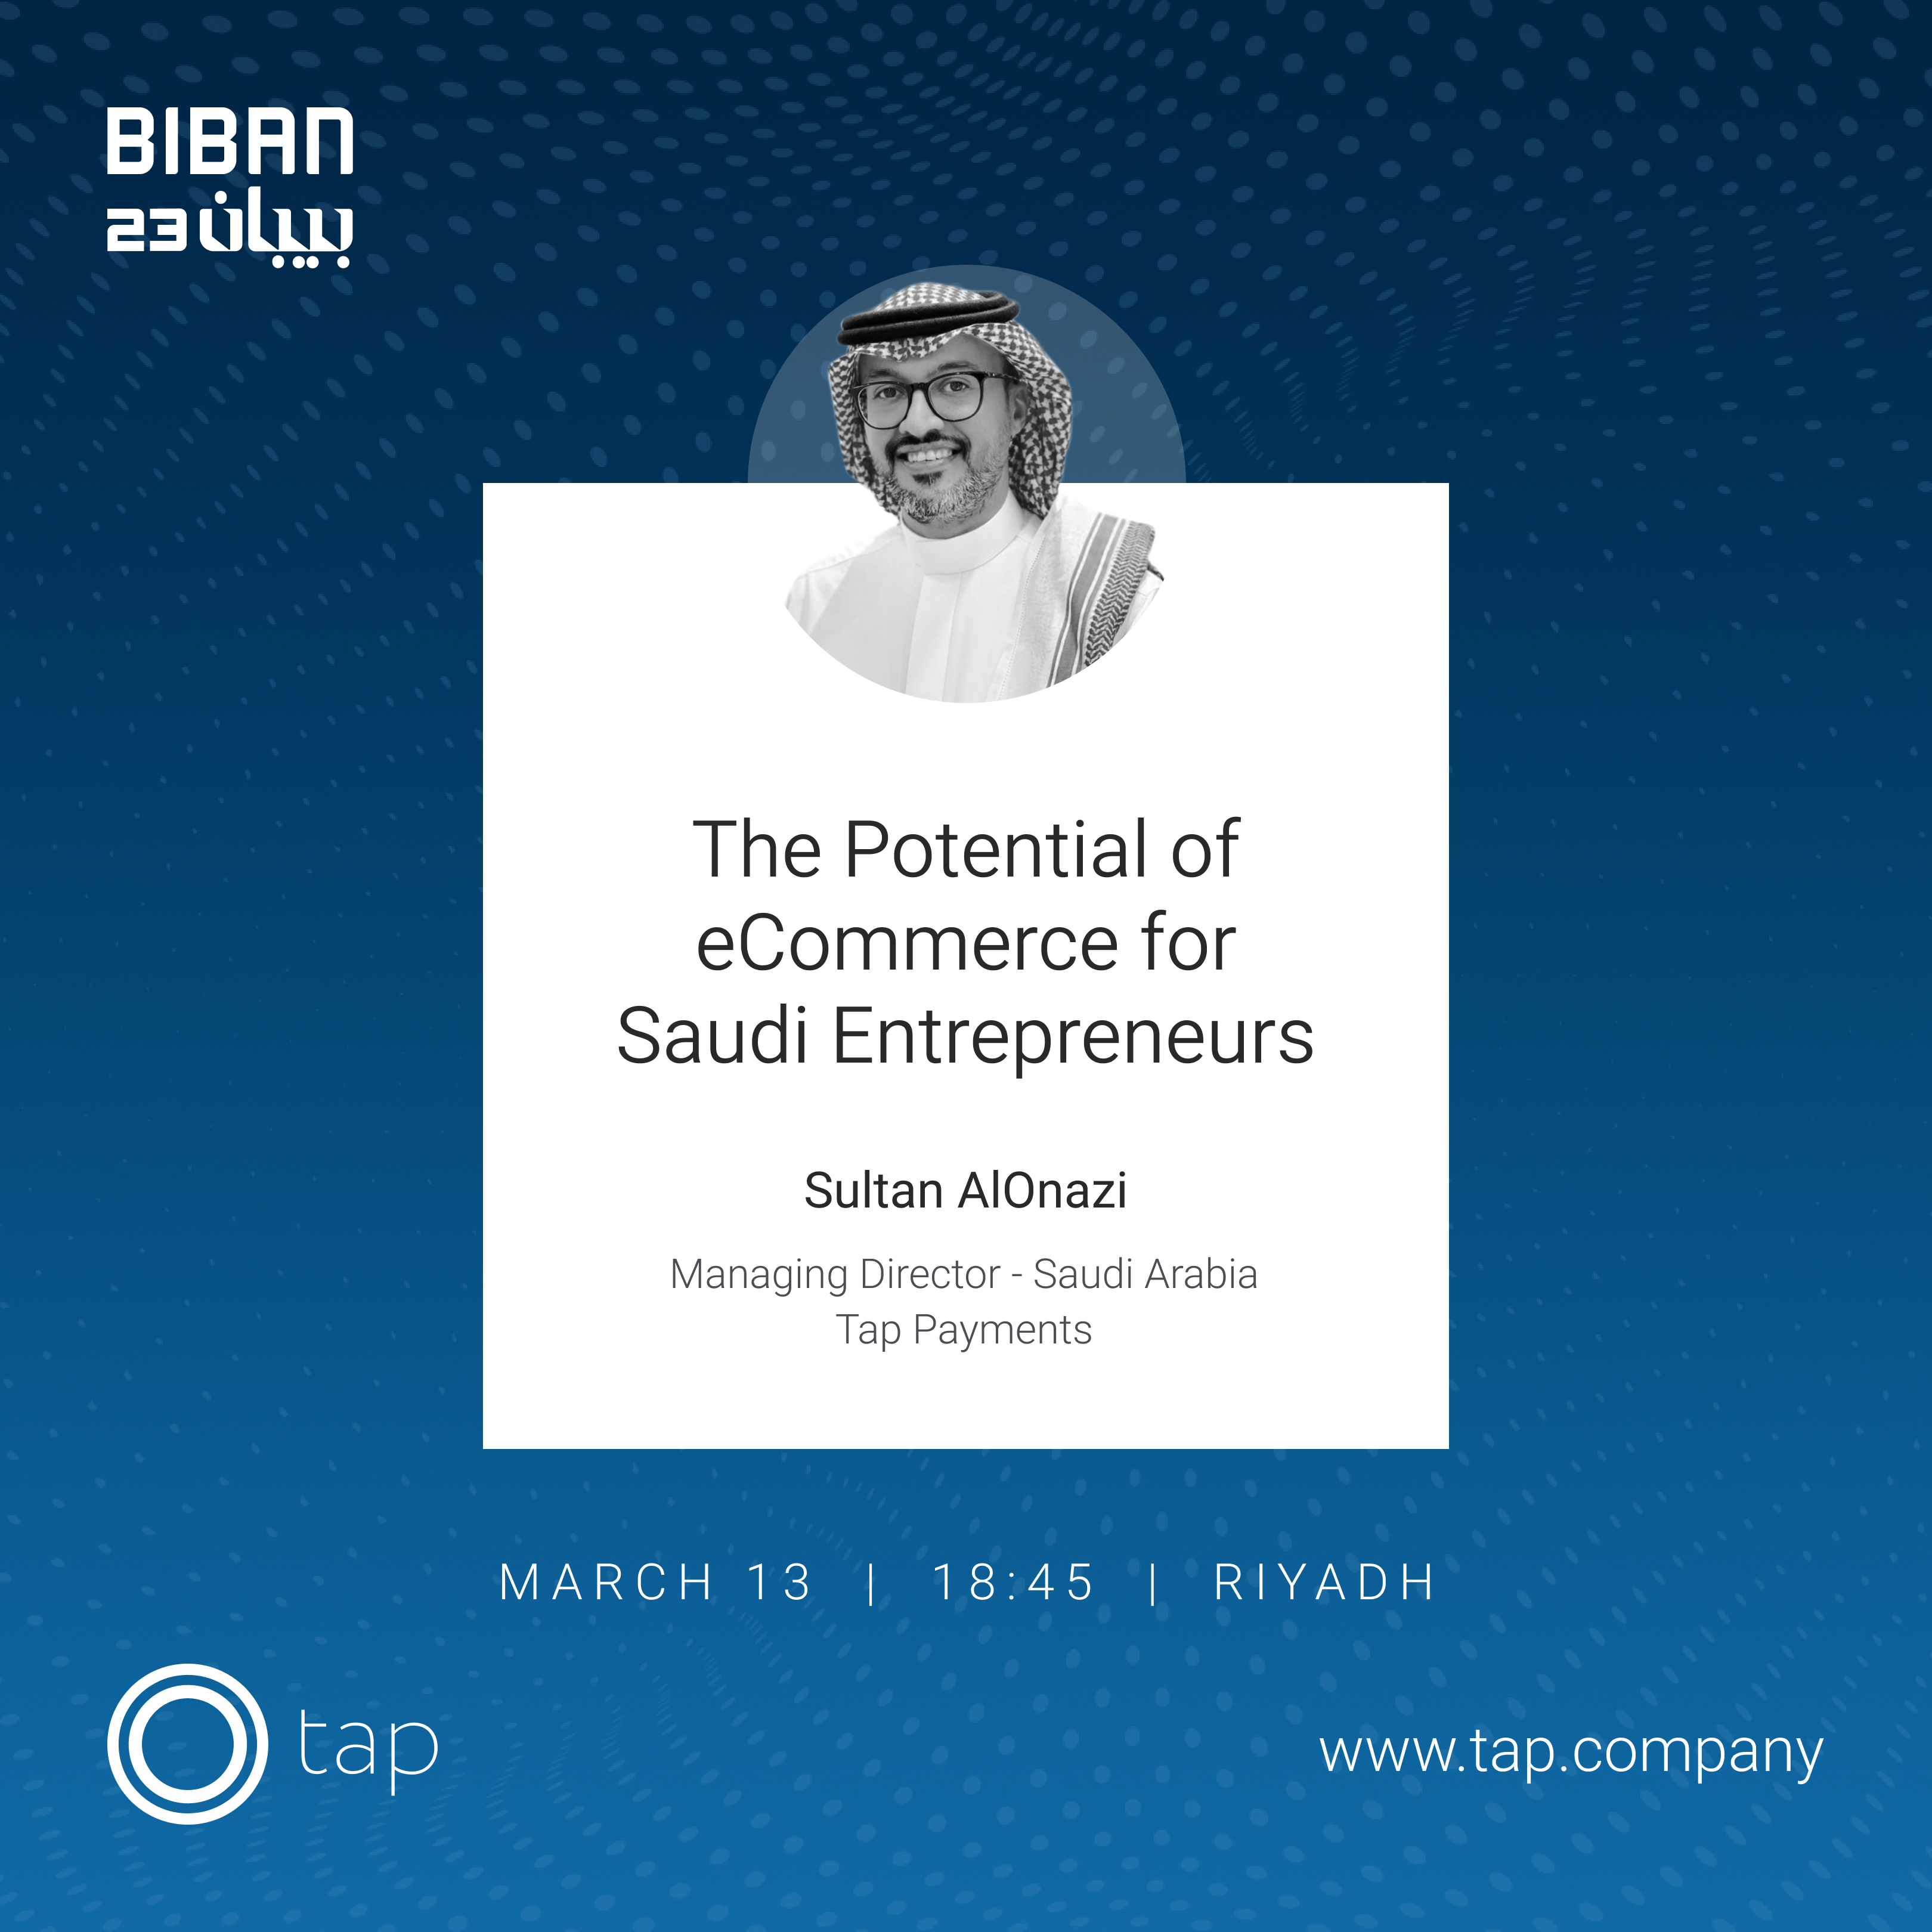 Sultan AlOnazi, Managing Director at Tap Payments Saudi Arabia at #Biban23